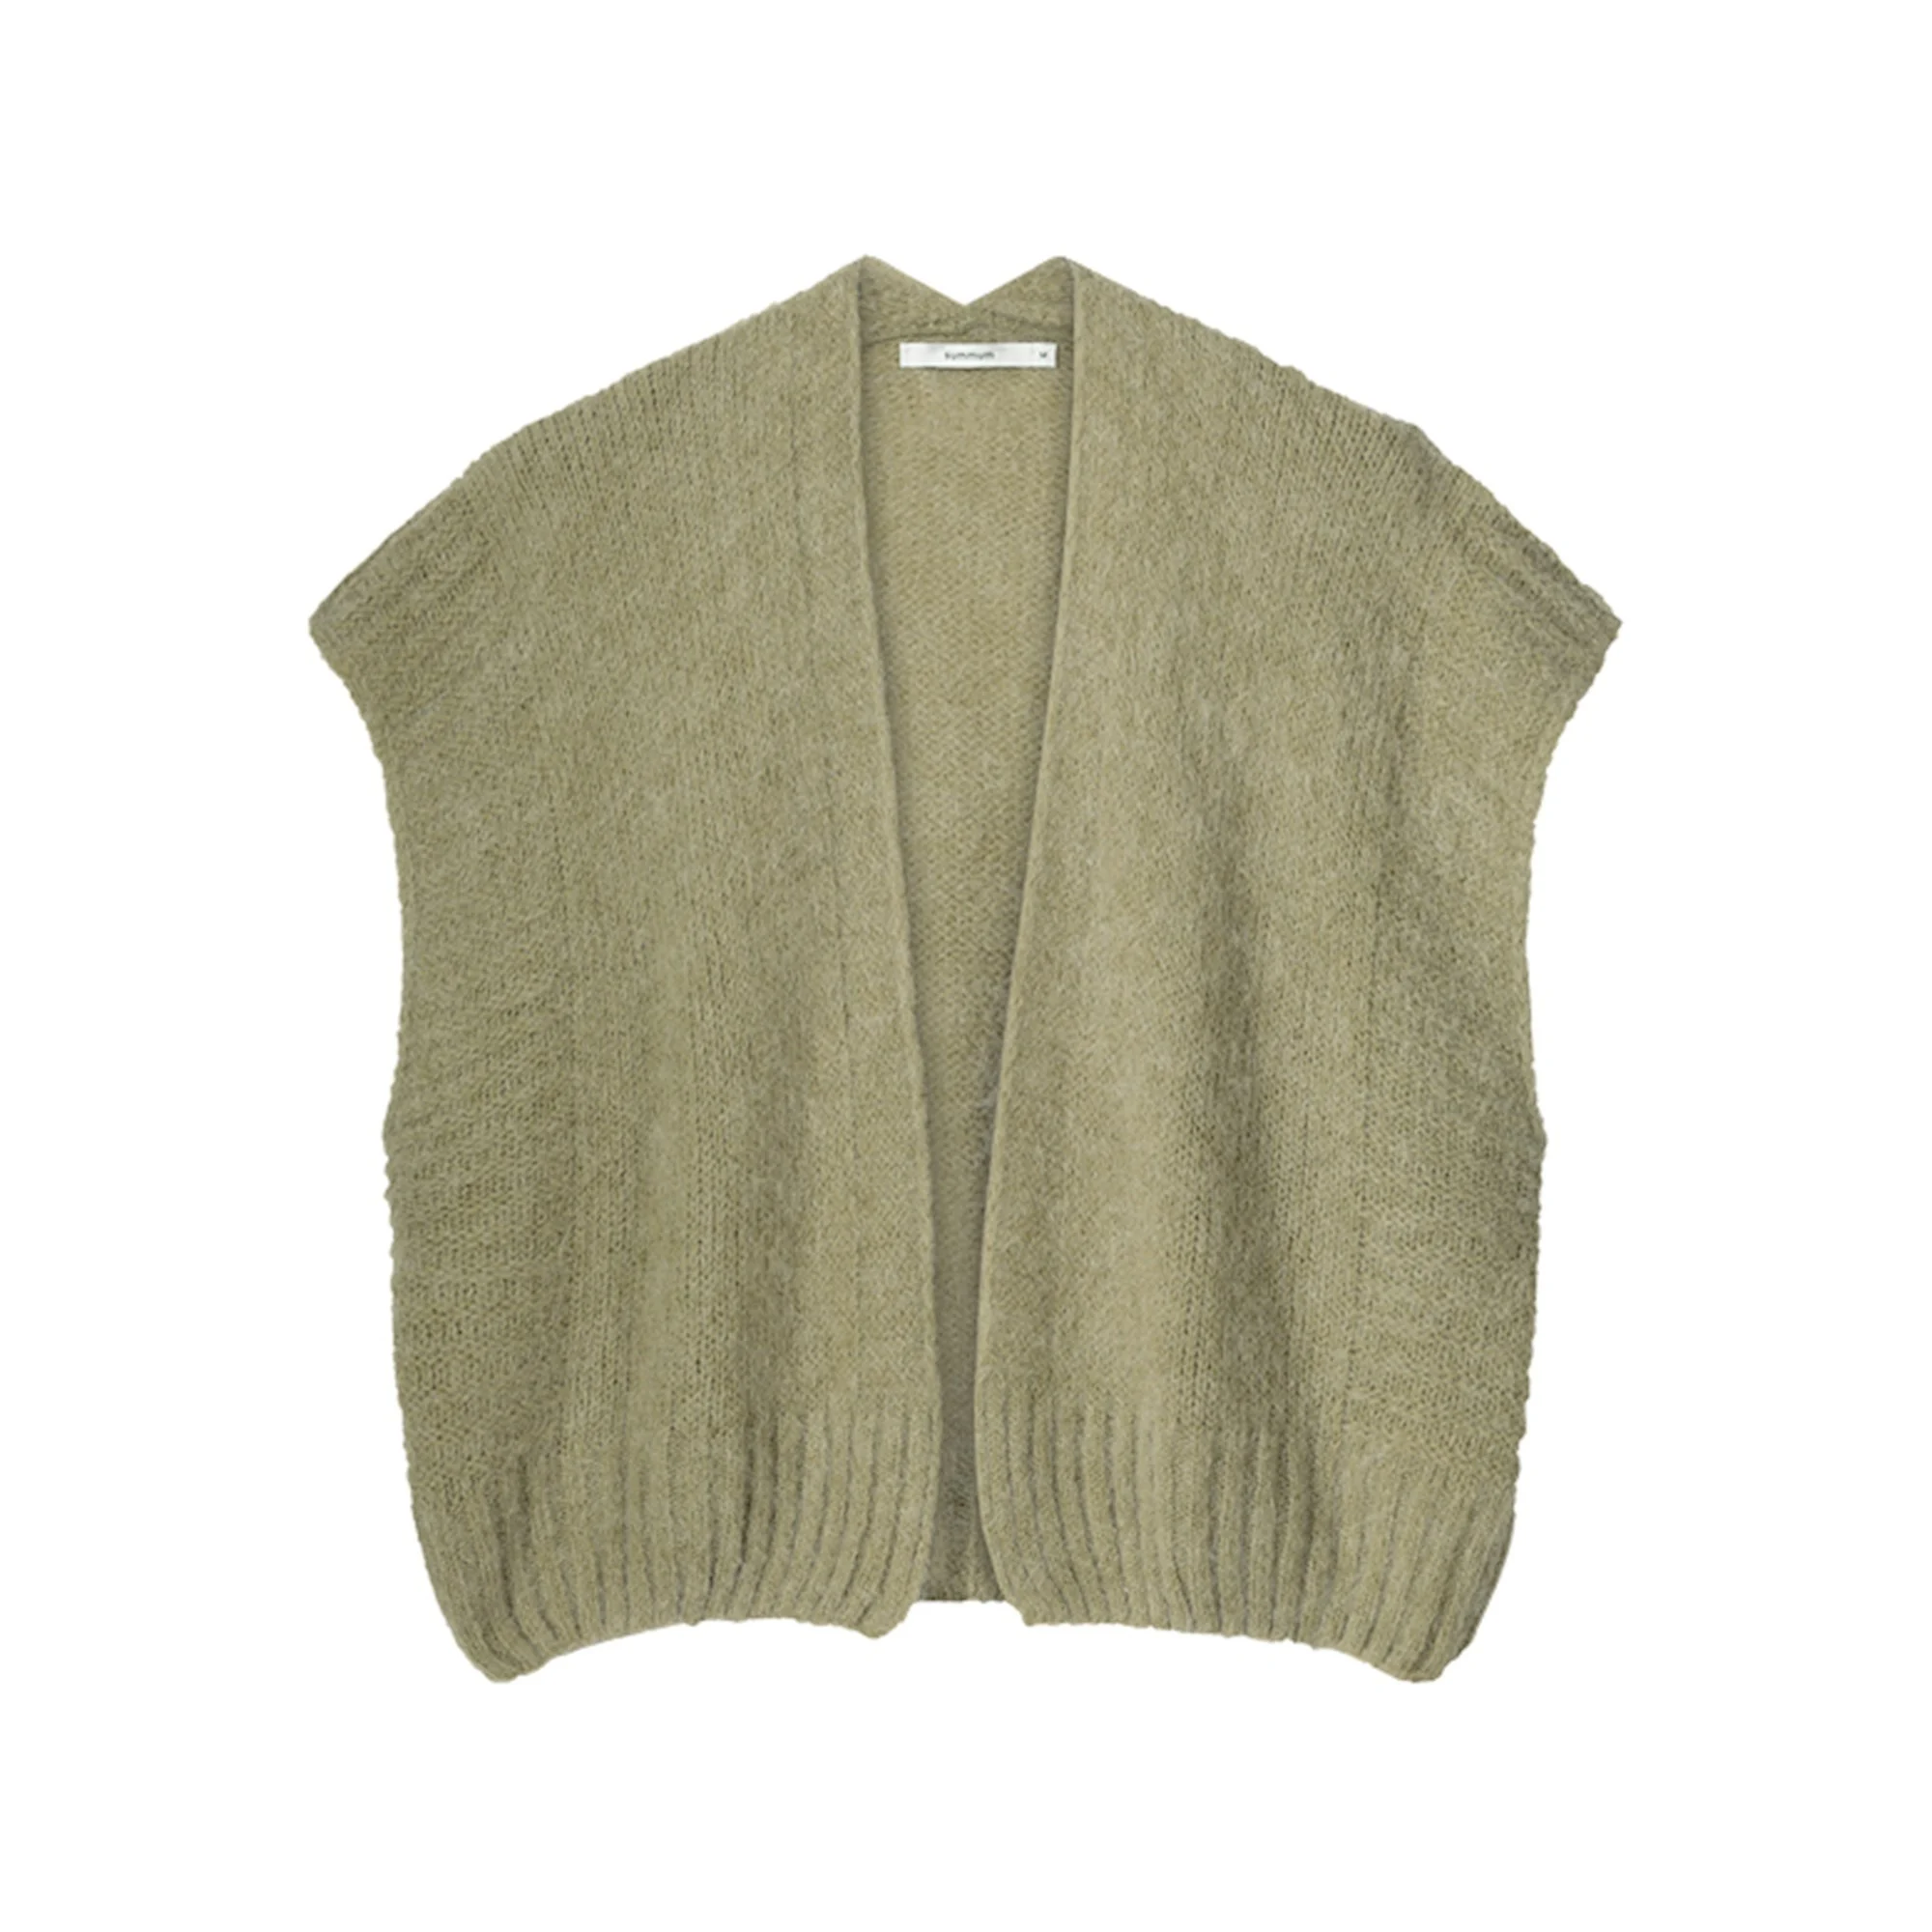 Summum 7s5814-7956 616 sleeveless cardigan mohair blend knit greenlentil